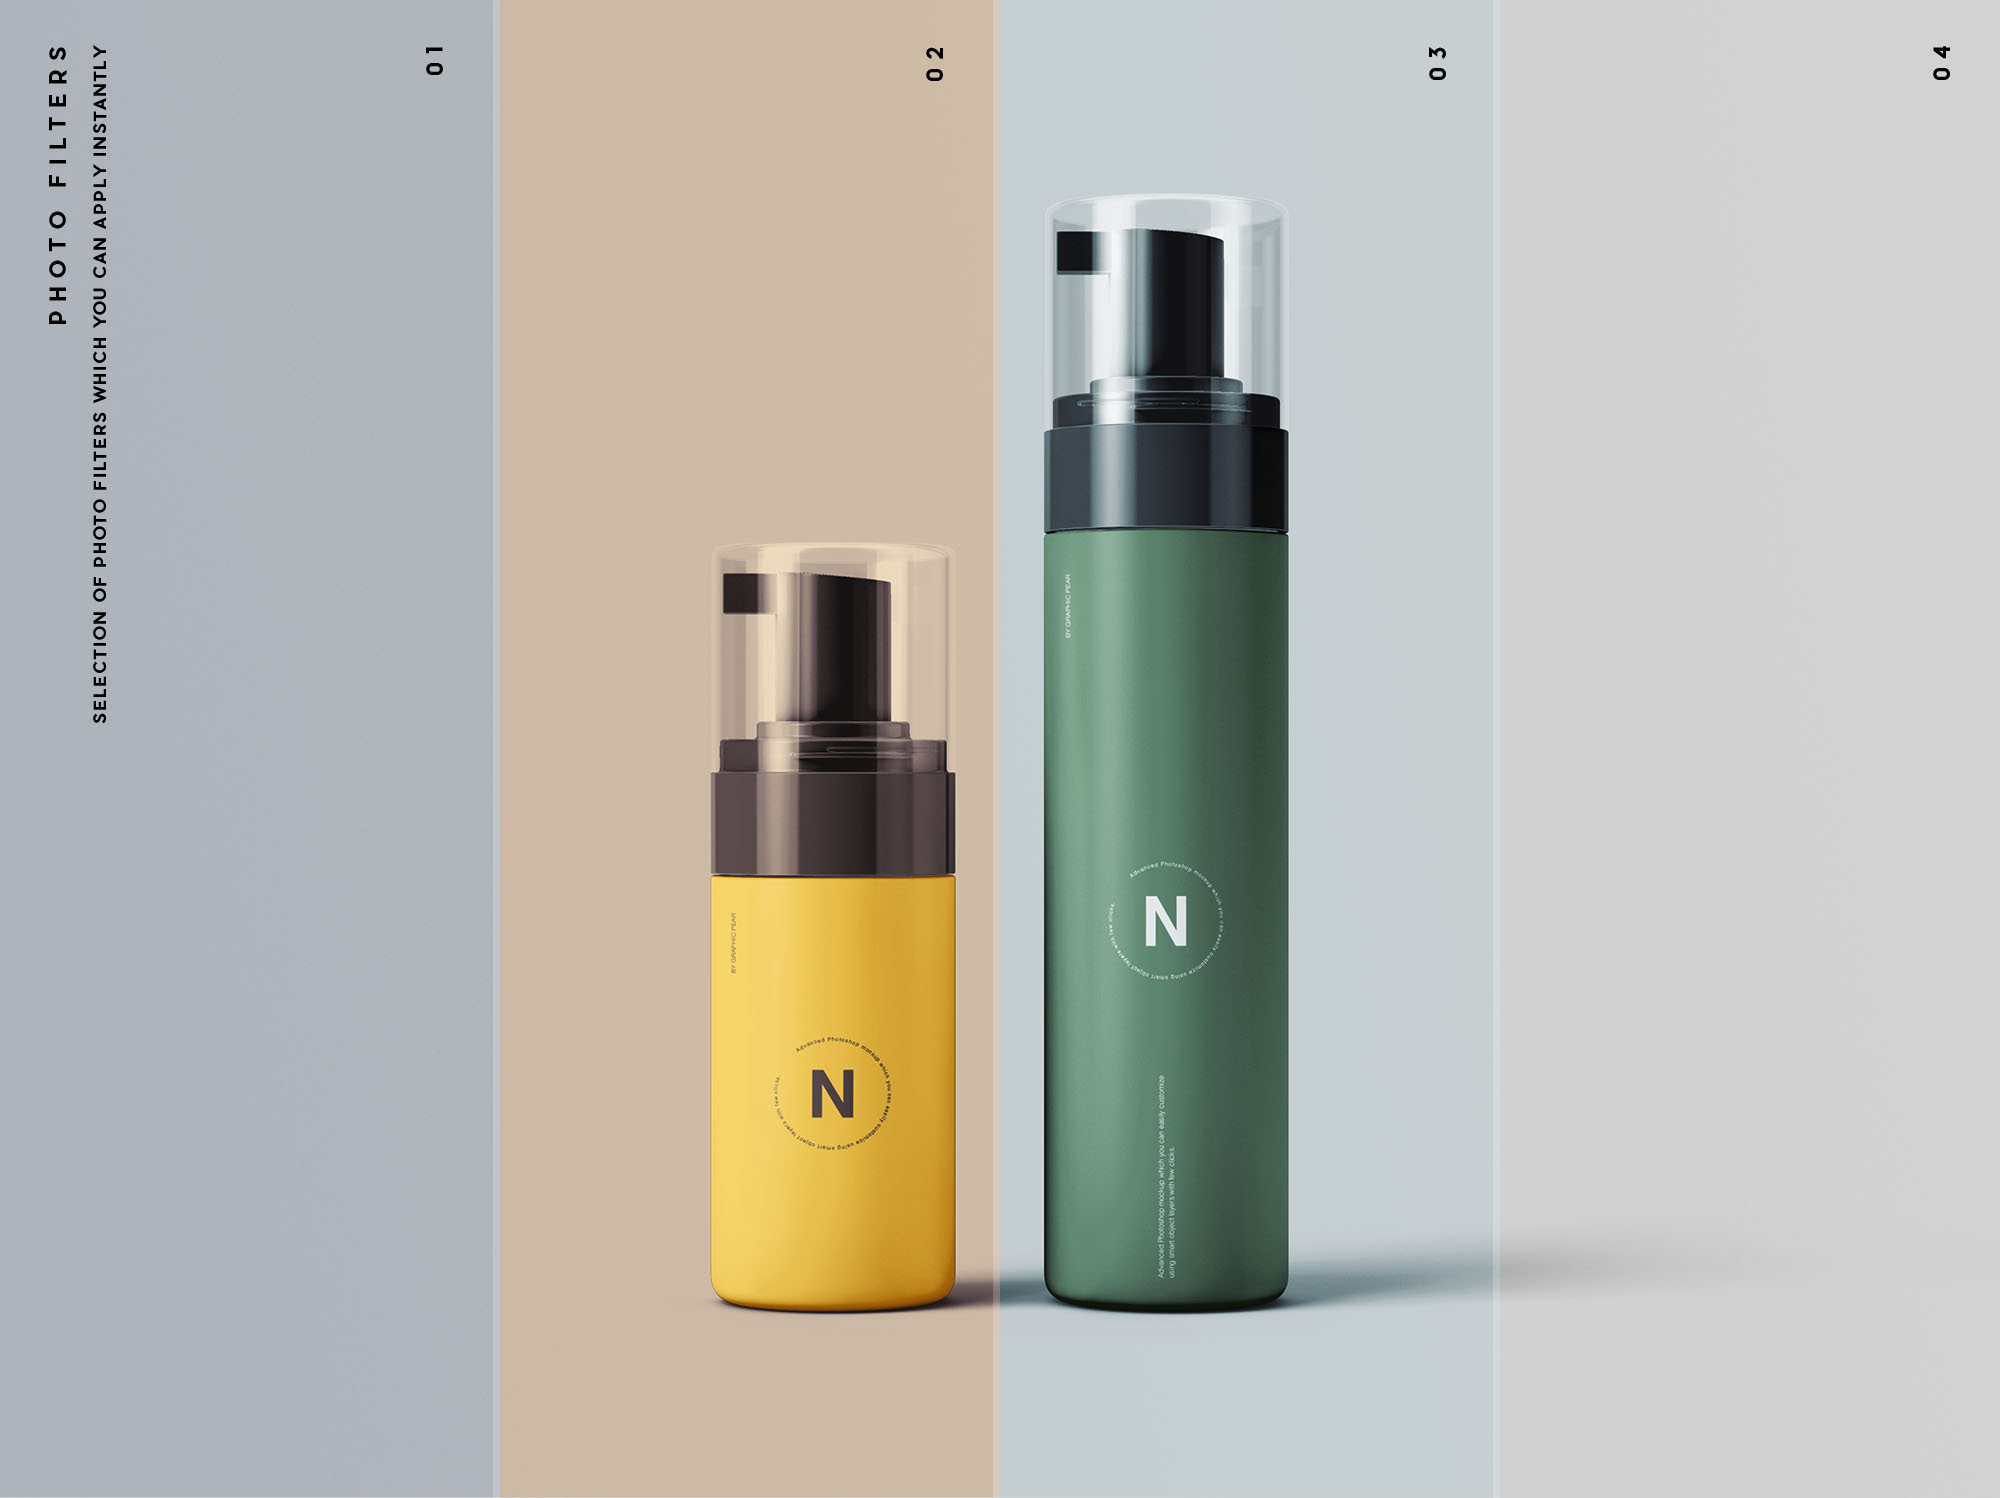 按压式化妆品护肤品瓶外观设计素材中国精选模板 Cosmetic Bottles Packaging Mockup插图(10)